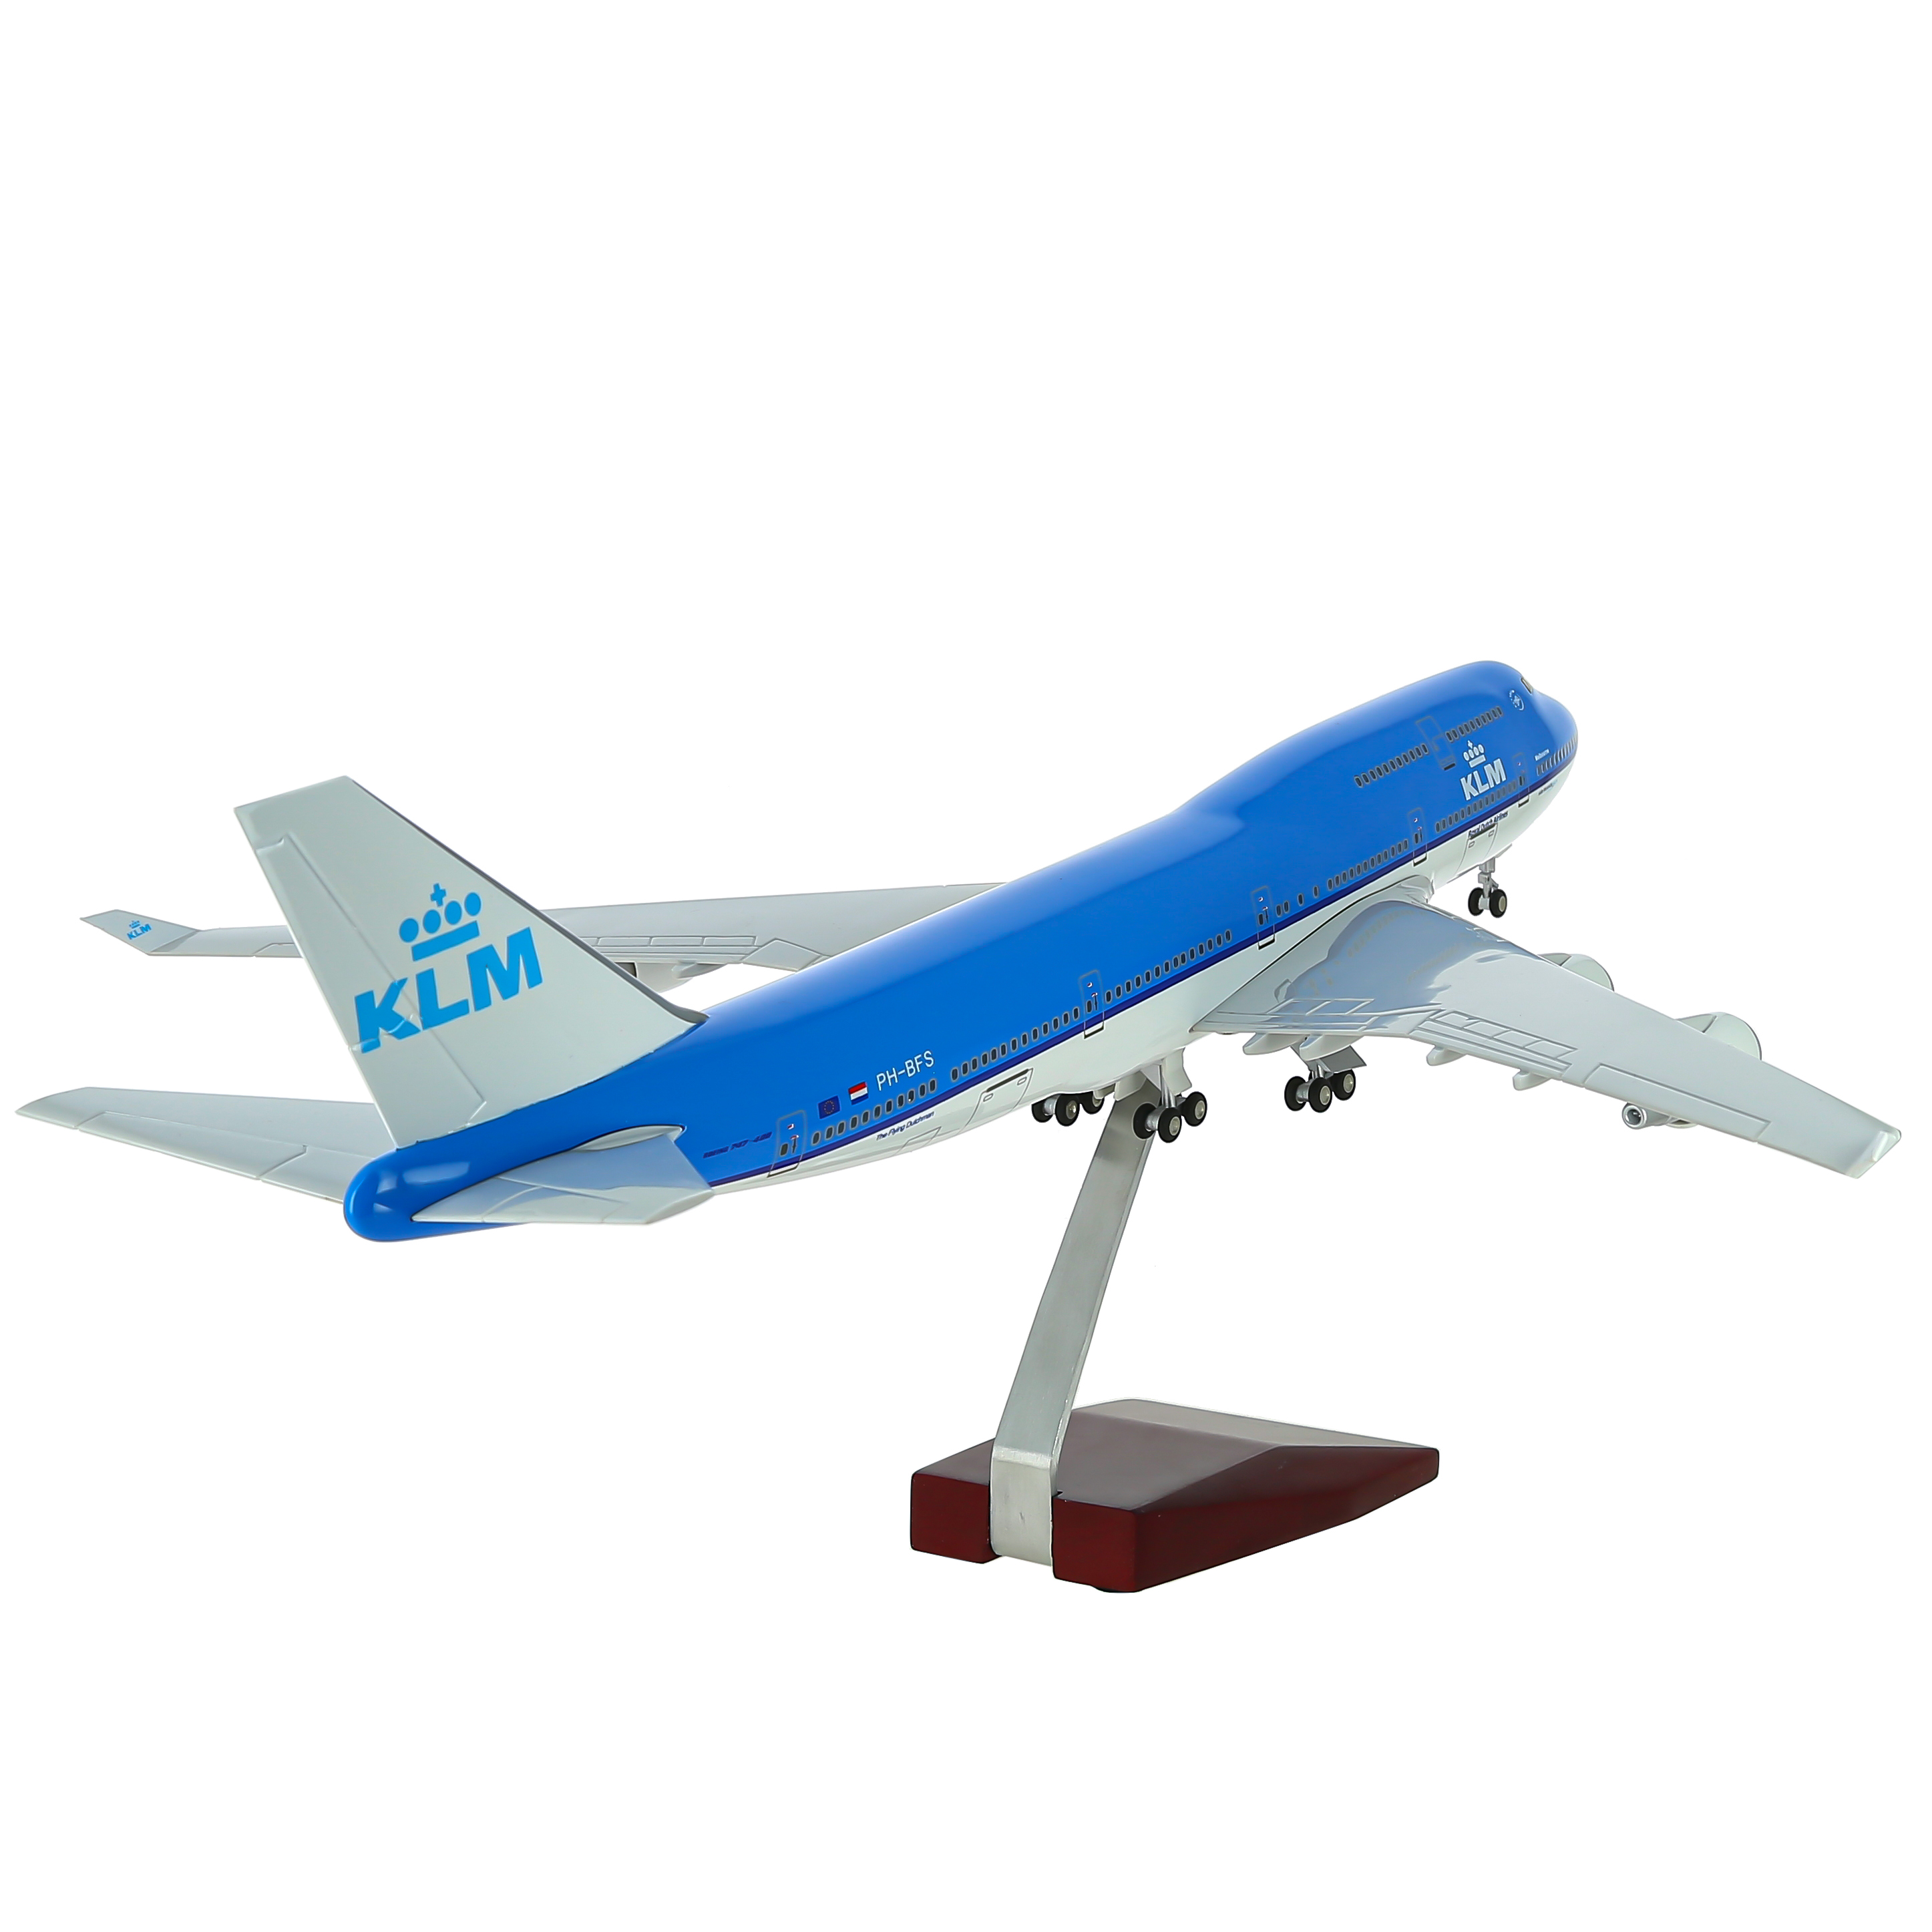     747  KLM,   .  47 . # 11 hobbyplus.ru